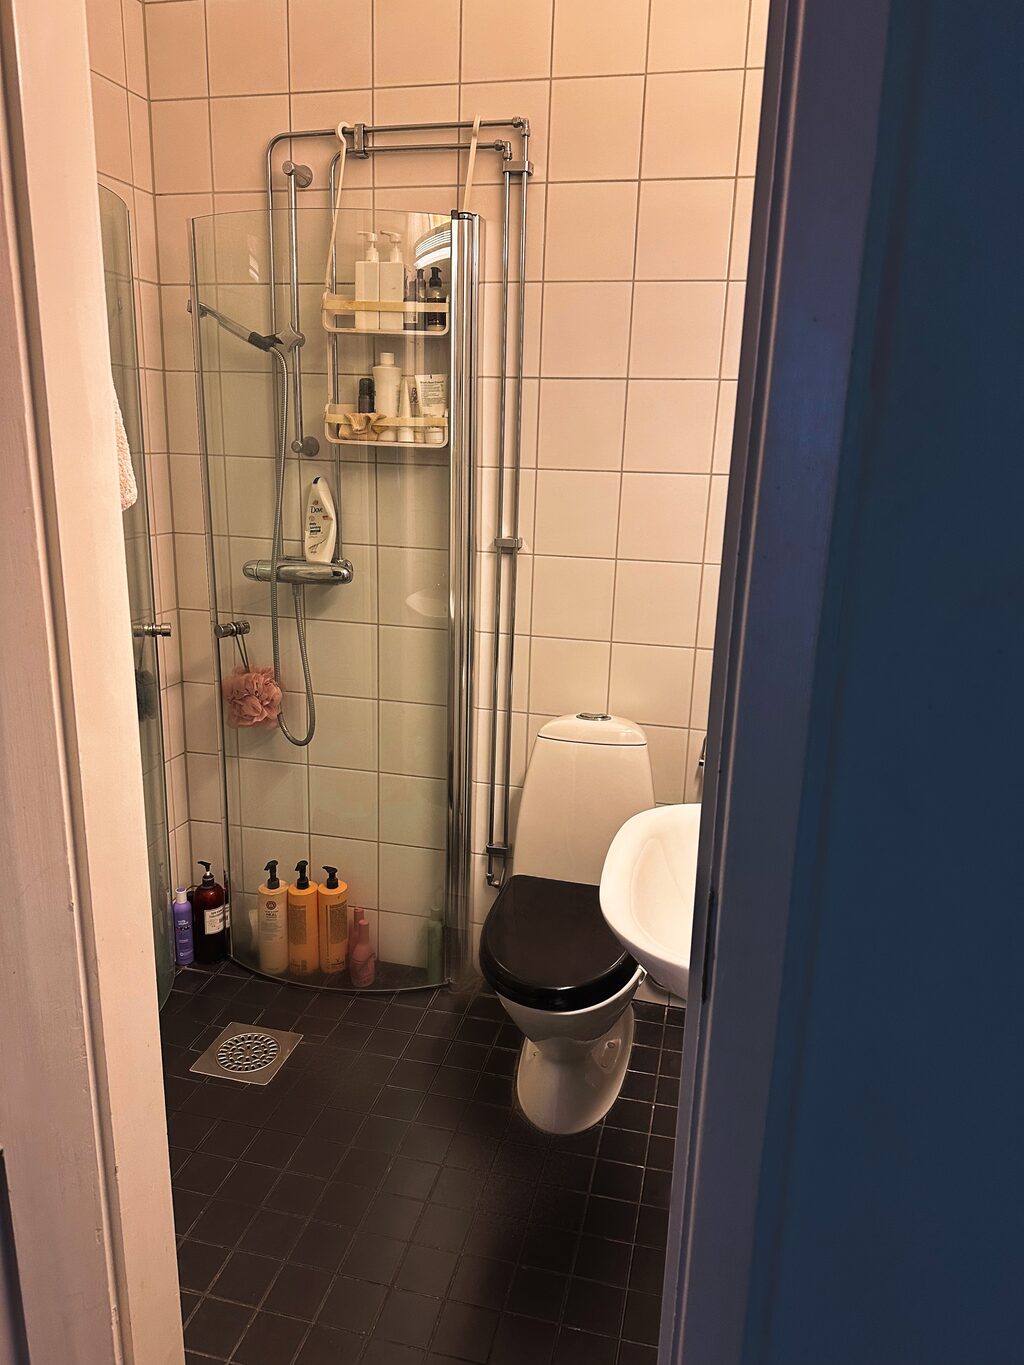 Lägenhetsbyte - Thottsgatan 14, 211 48 Malmö